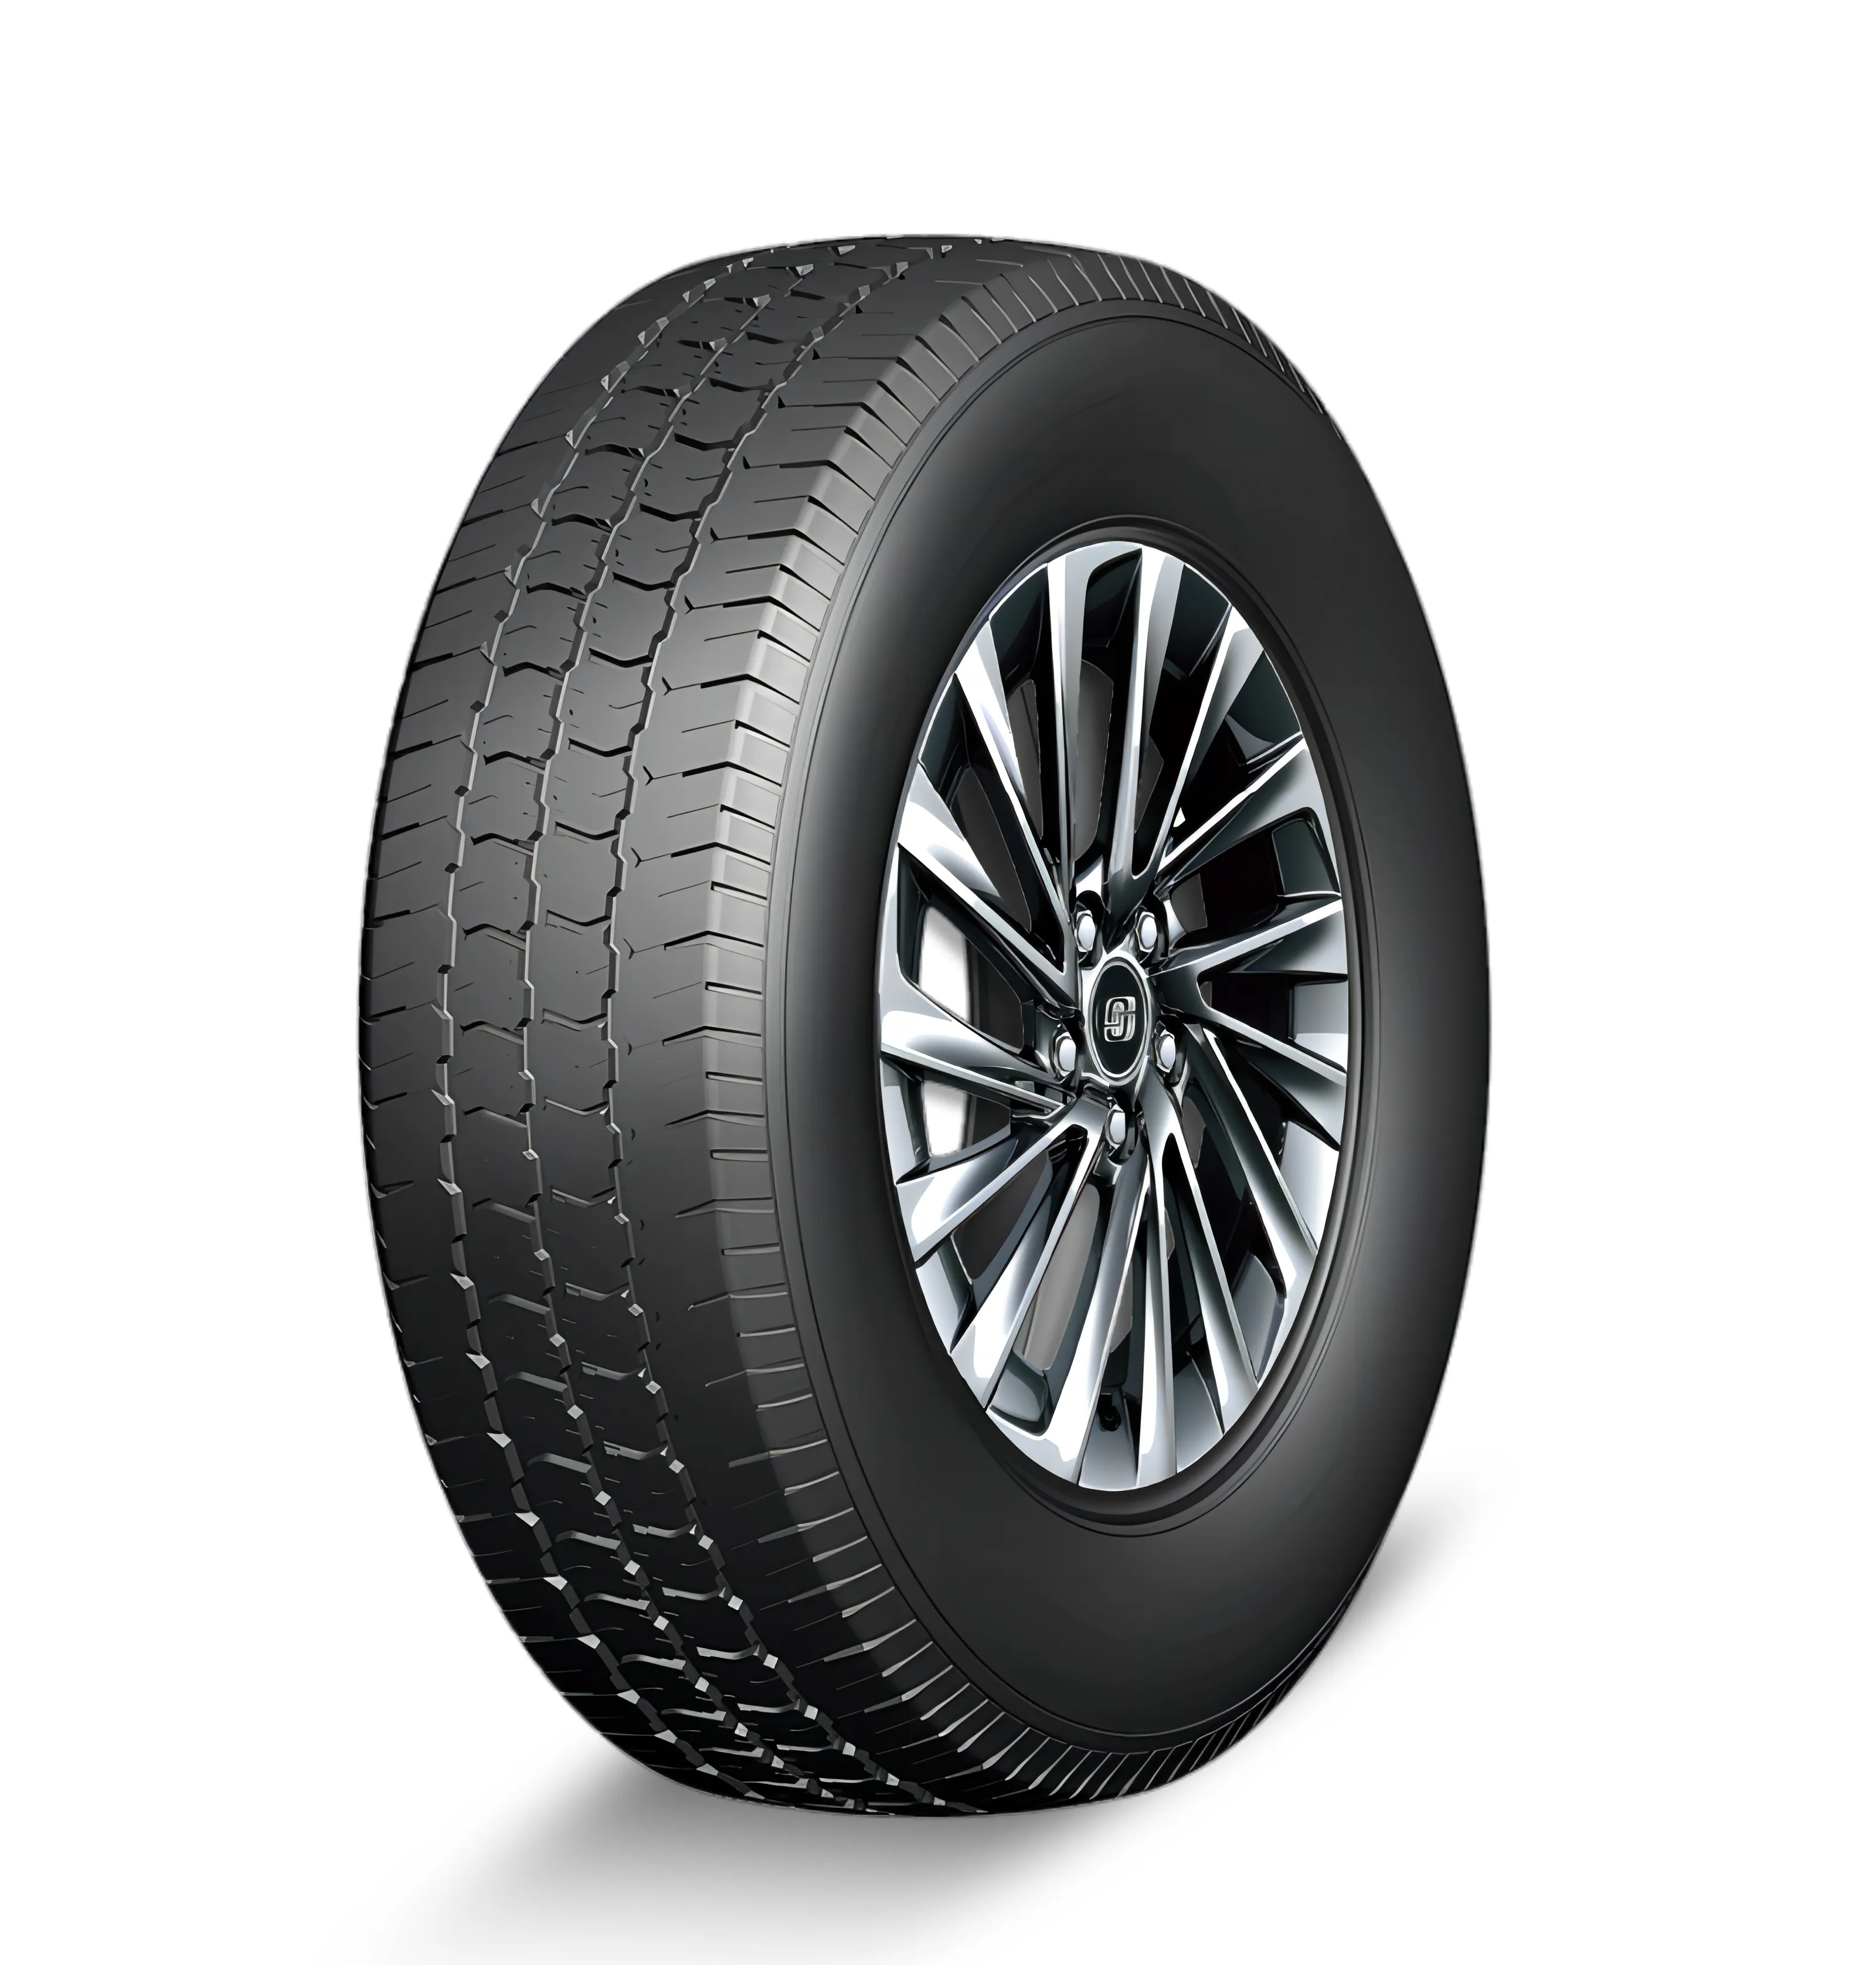 Barato AS ATV VAN pneus para carros 215/70r16 215 70 16 toda a temporada pneus radiais 31x10.50r15 225 50 r17 255/70r15 pneu novo para venda